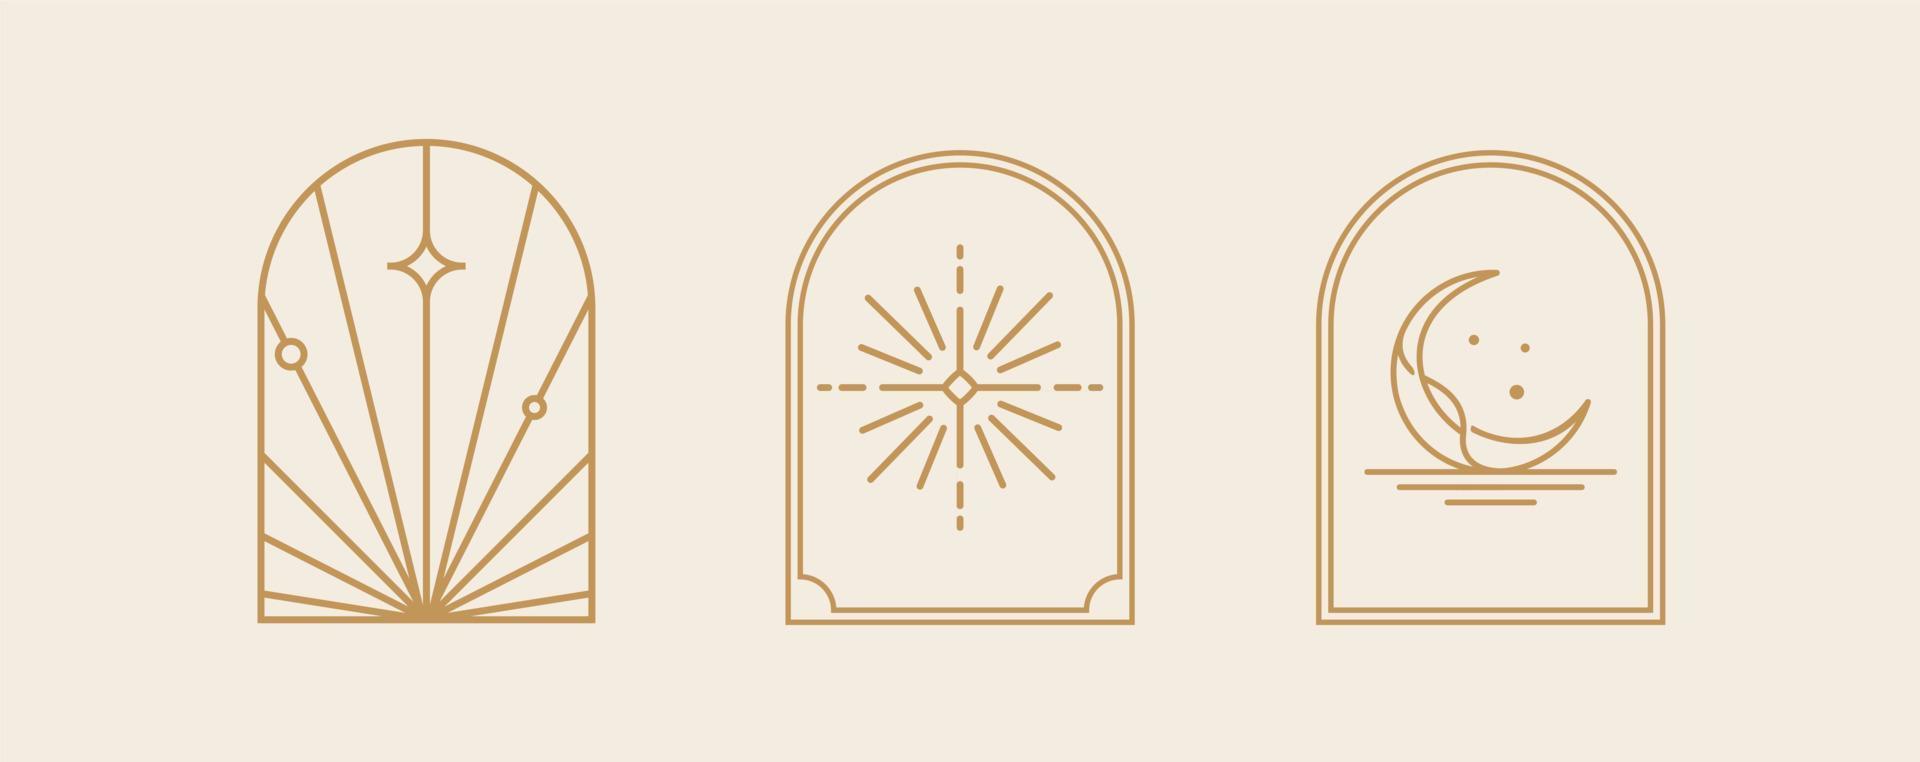 arte do logotipo da linha boêmia, ícones e símbolos, sol e lua, elementos de design abstrato geométrico de design de janela de arco para decoração vetor